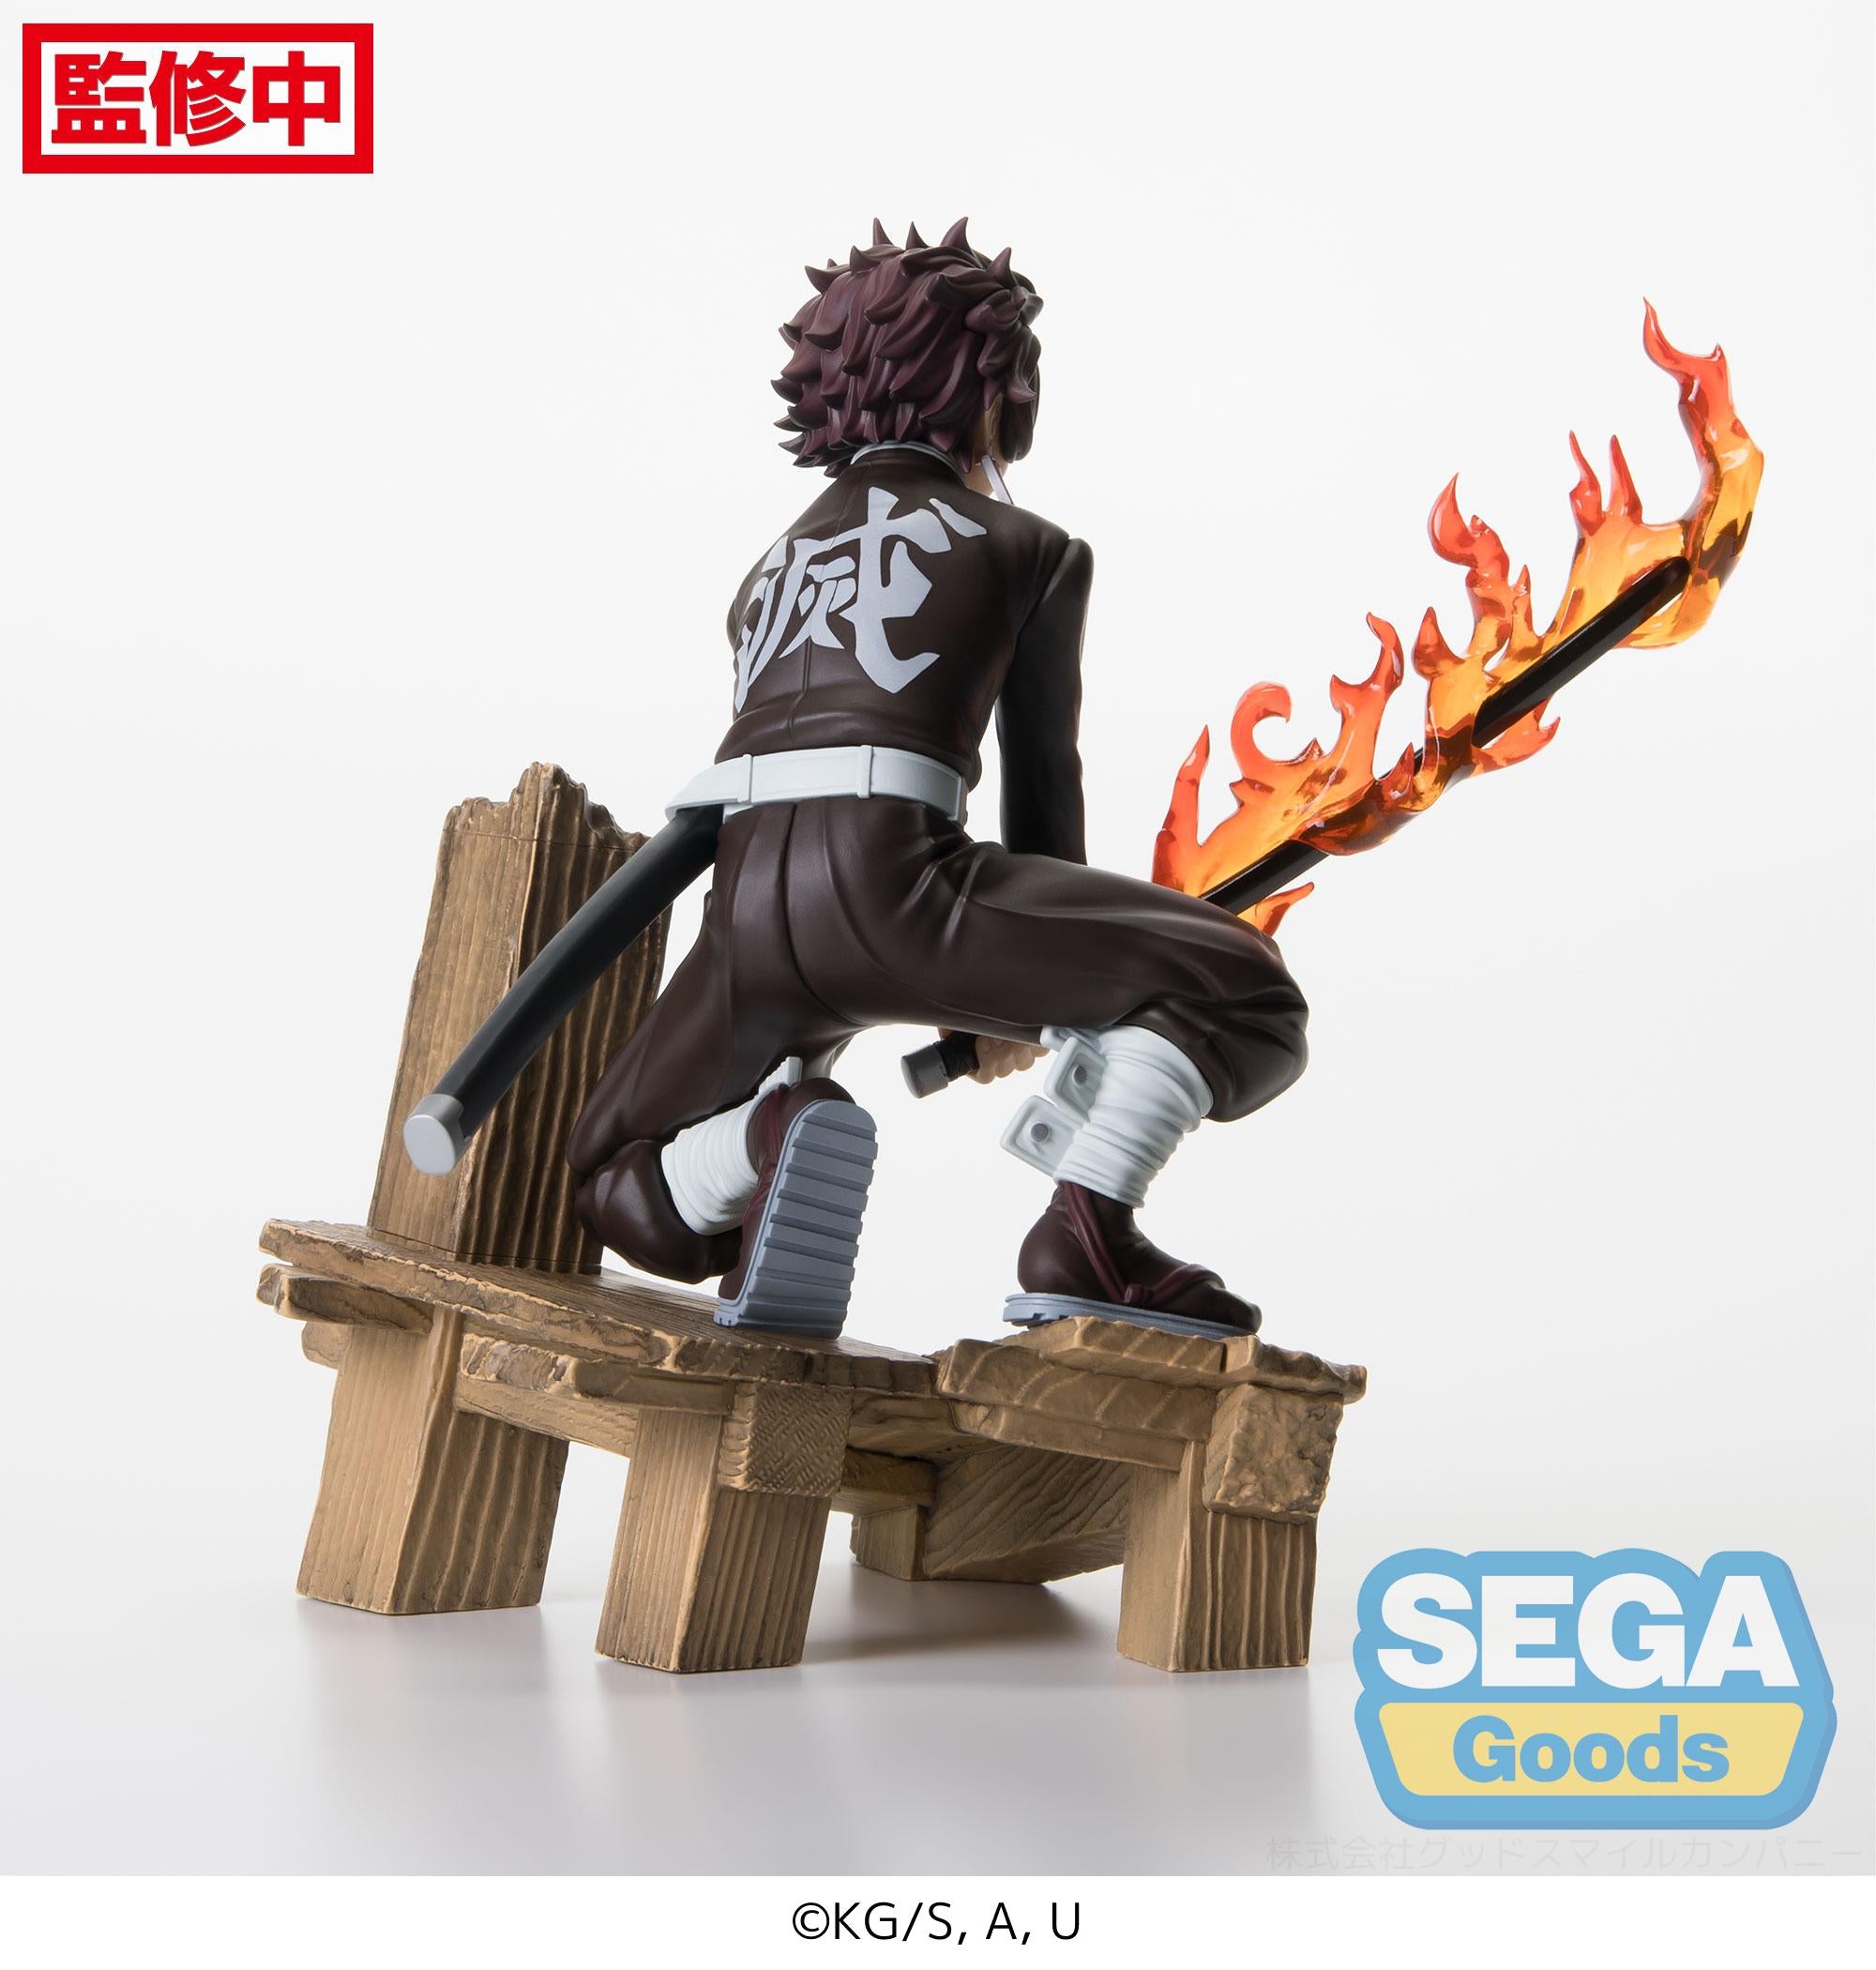 Sega Figures Xross Link: Demon Slayer Kimetsu No Yaiba - Tanjiro Kamado Swordsmith Village Arc